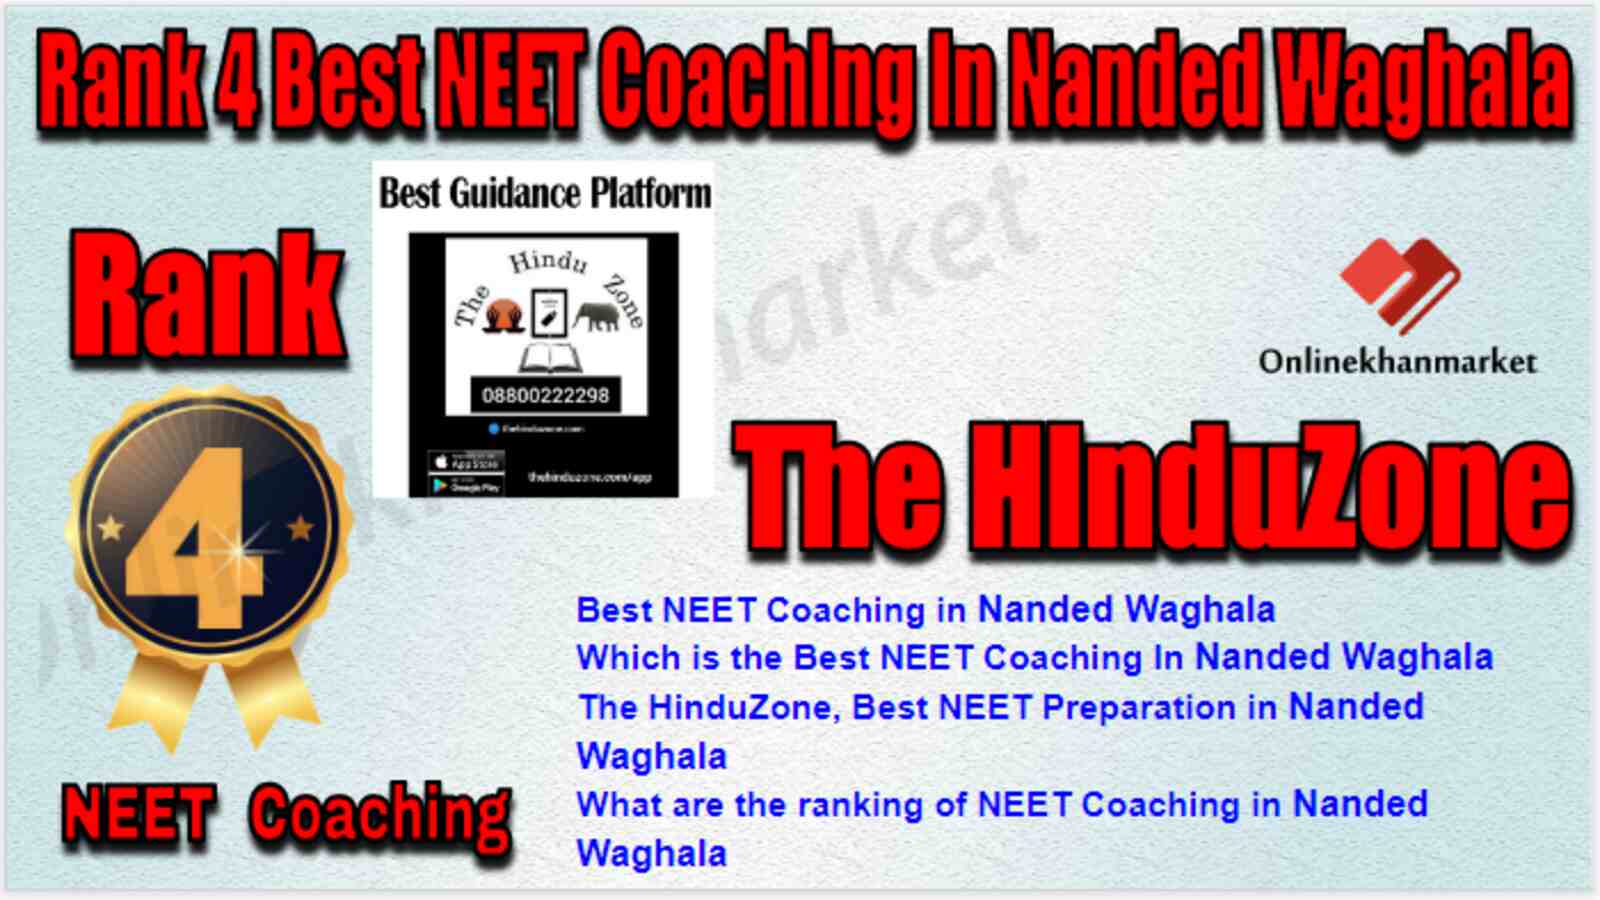 Rank 4 Best NEET Coaching in Nanded Waghala